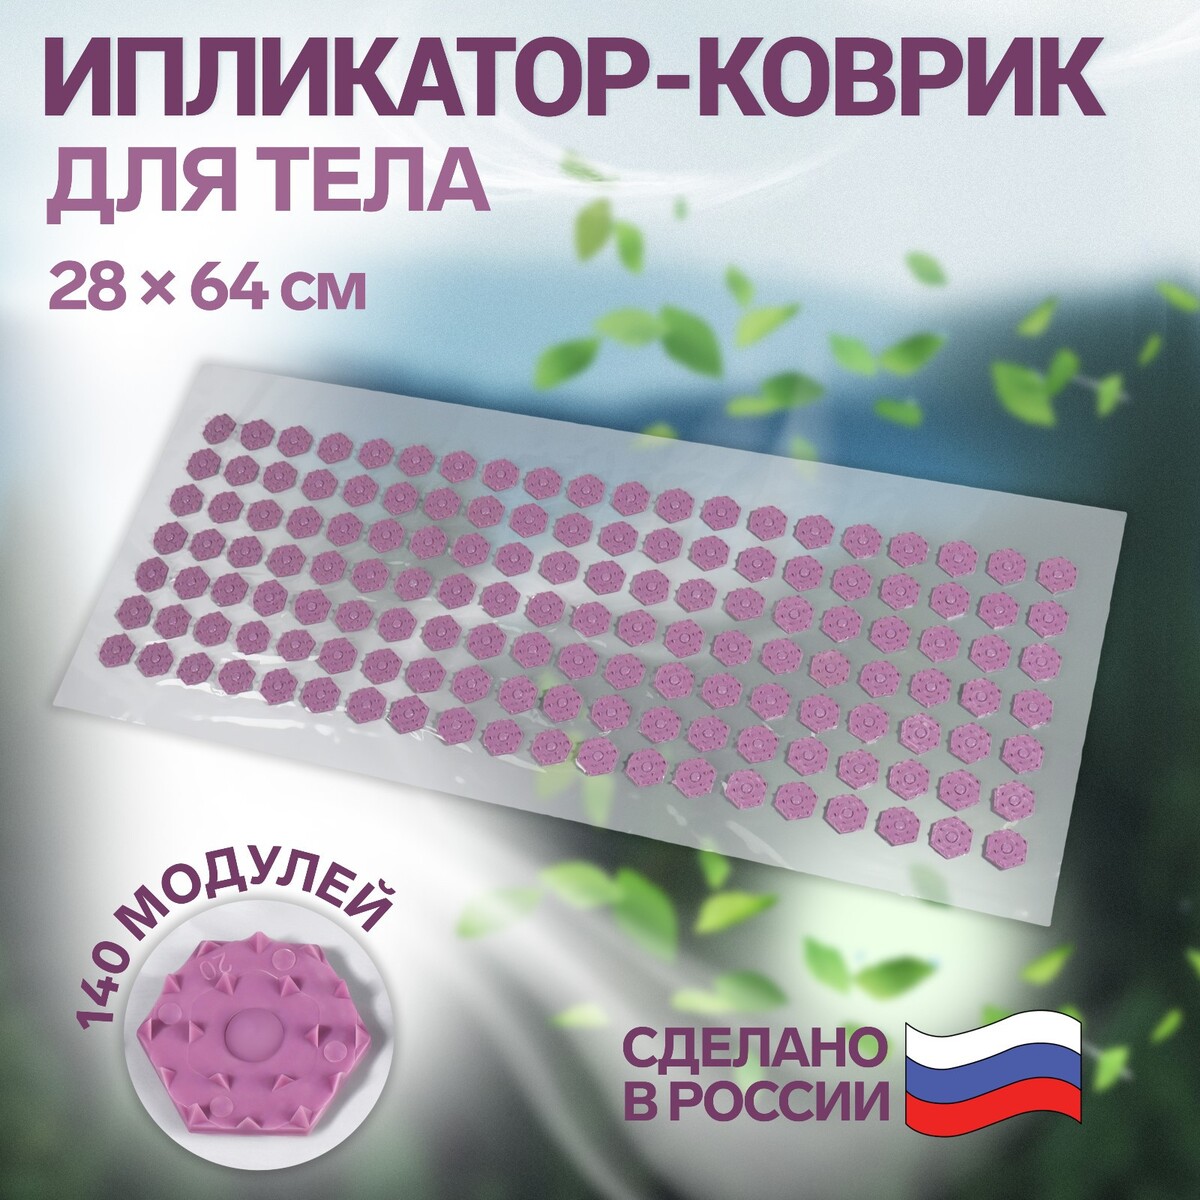 Ипликатор-коврик, основа пвх, 140 модулей, 28 × 64 см, цвет прозрачный/фиолетовый коврик для ванной 60 х 100 см dasch альбина фиолетовый